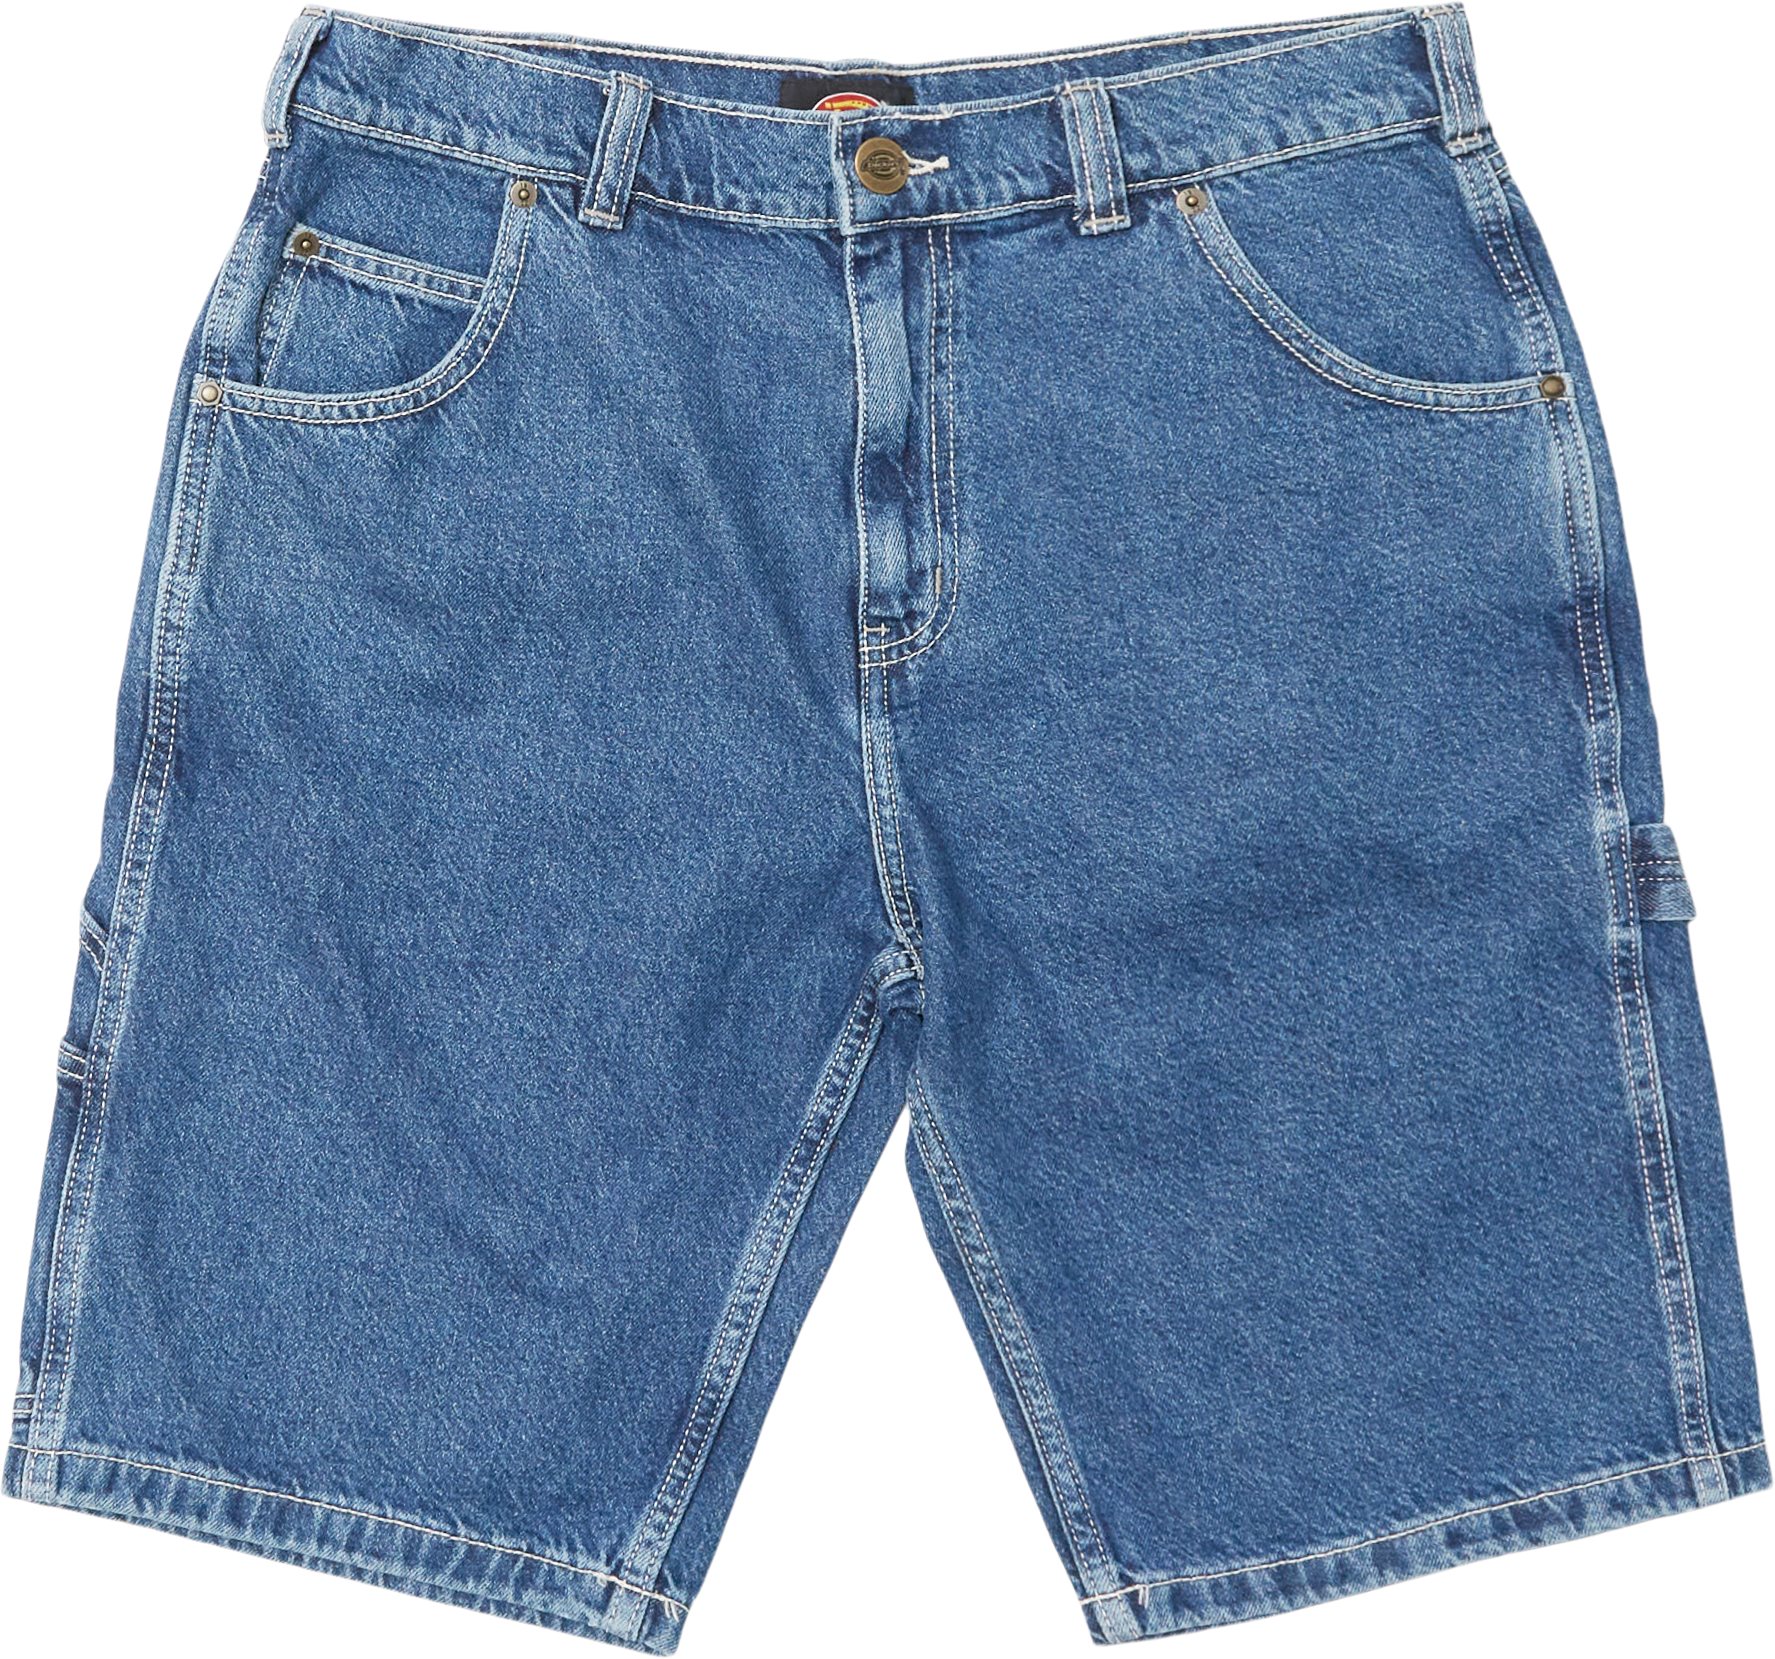 Garyville jeansshorts - Shorts - Regular fit - Denim